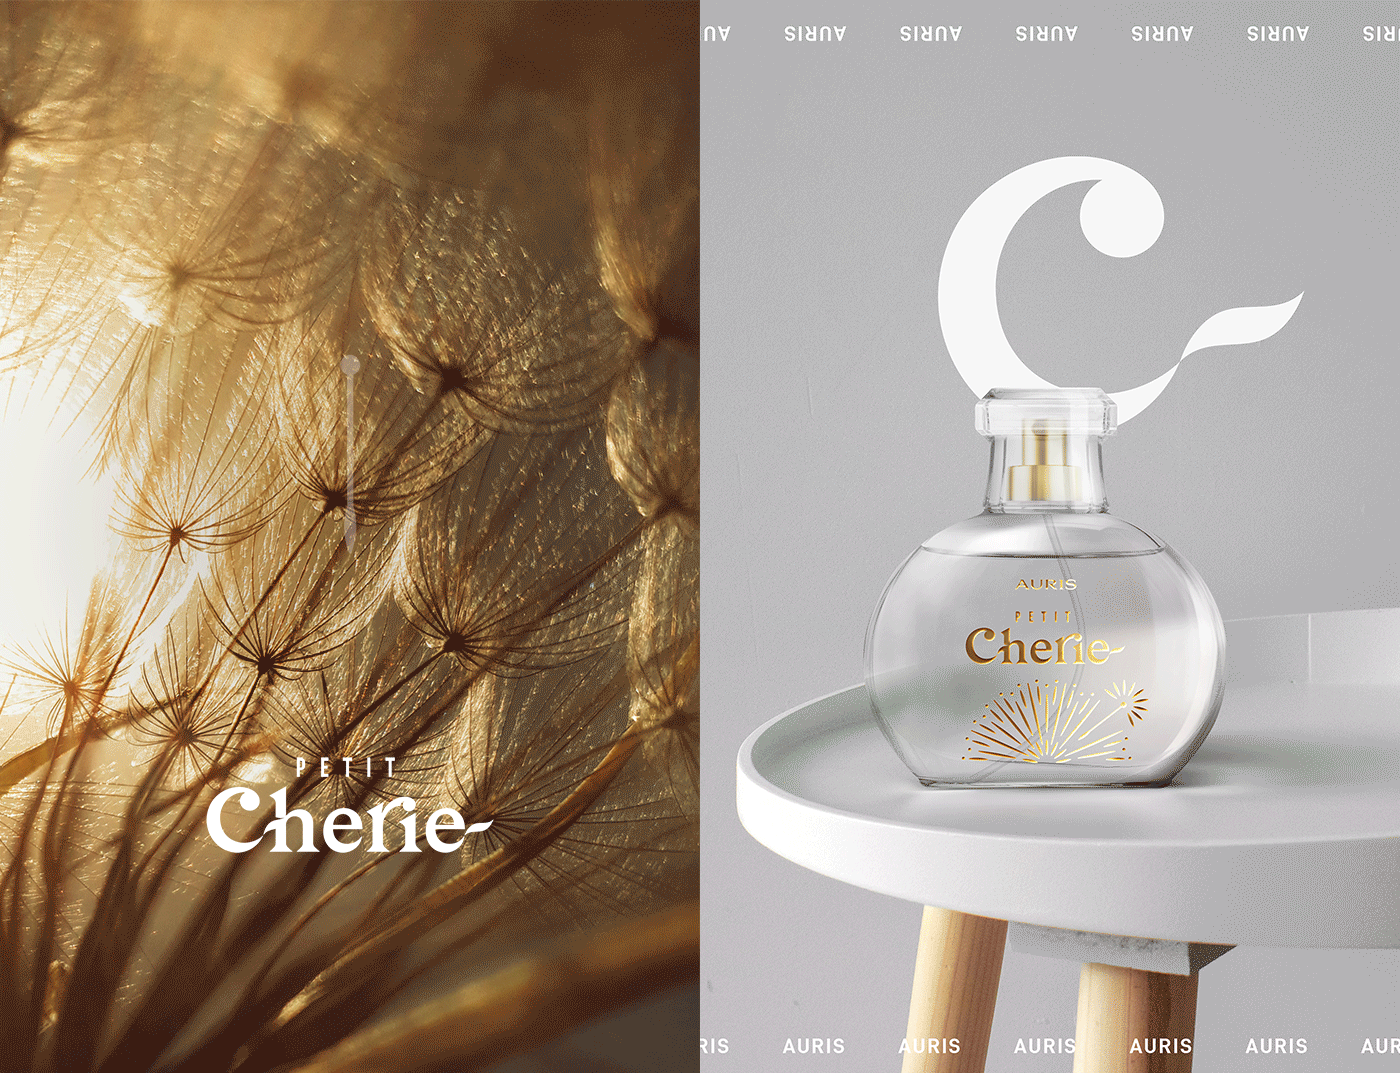  Petit Cherie 系列产品创意包装设计(图6)